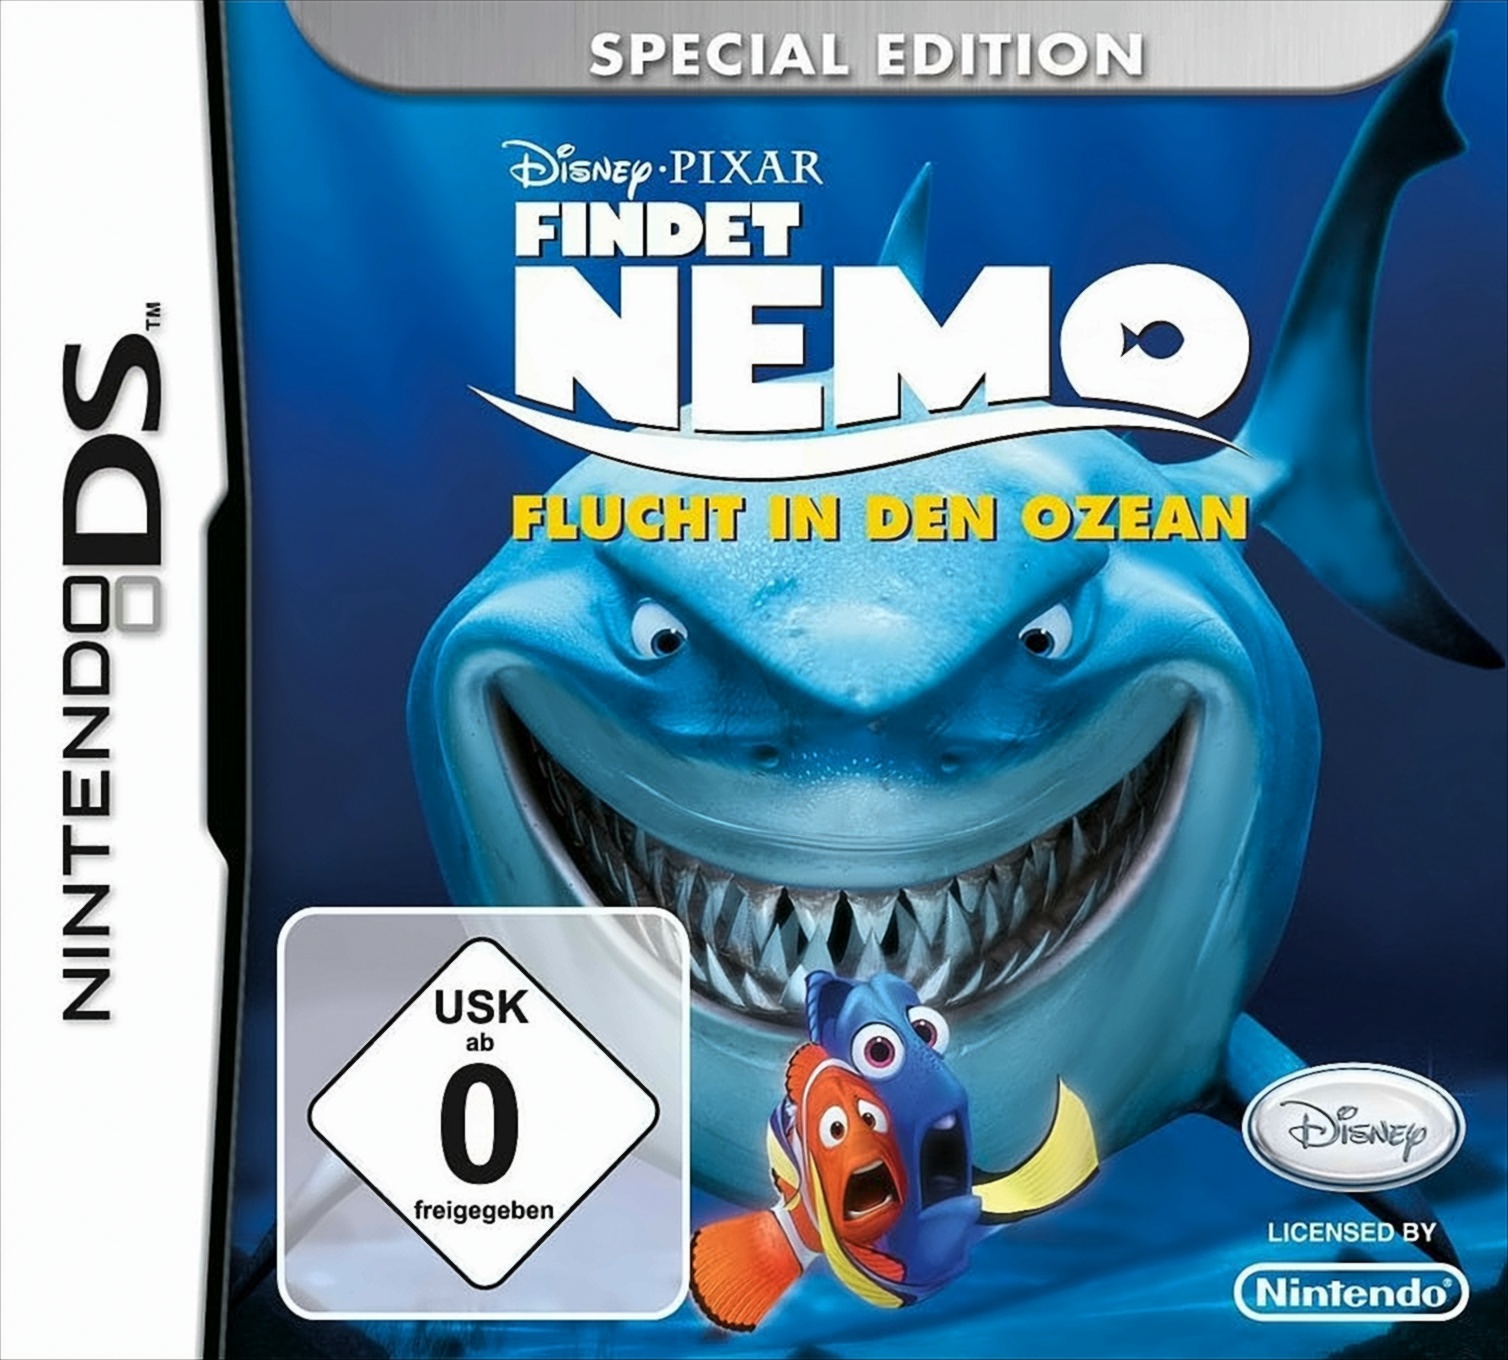 Findet Nemo: Flucht in den Ozean - Special Edition von Disney